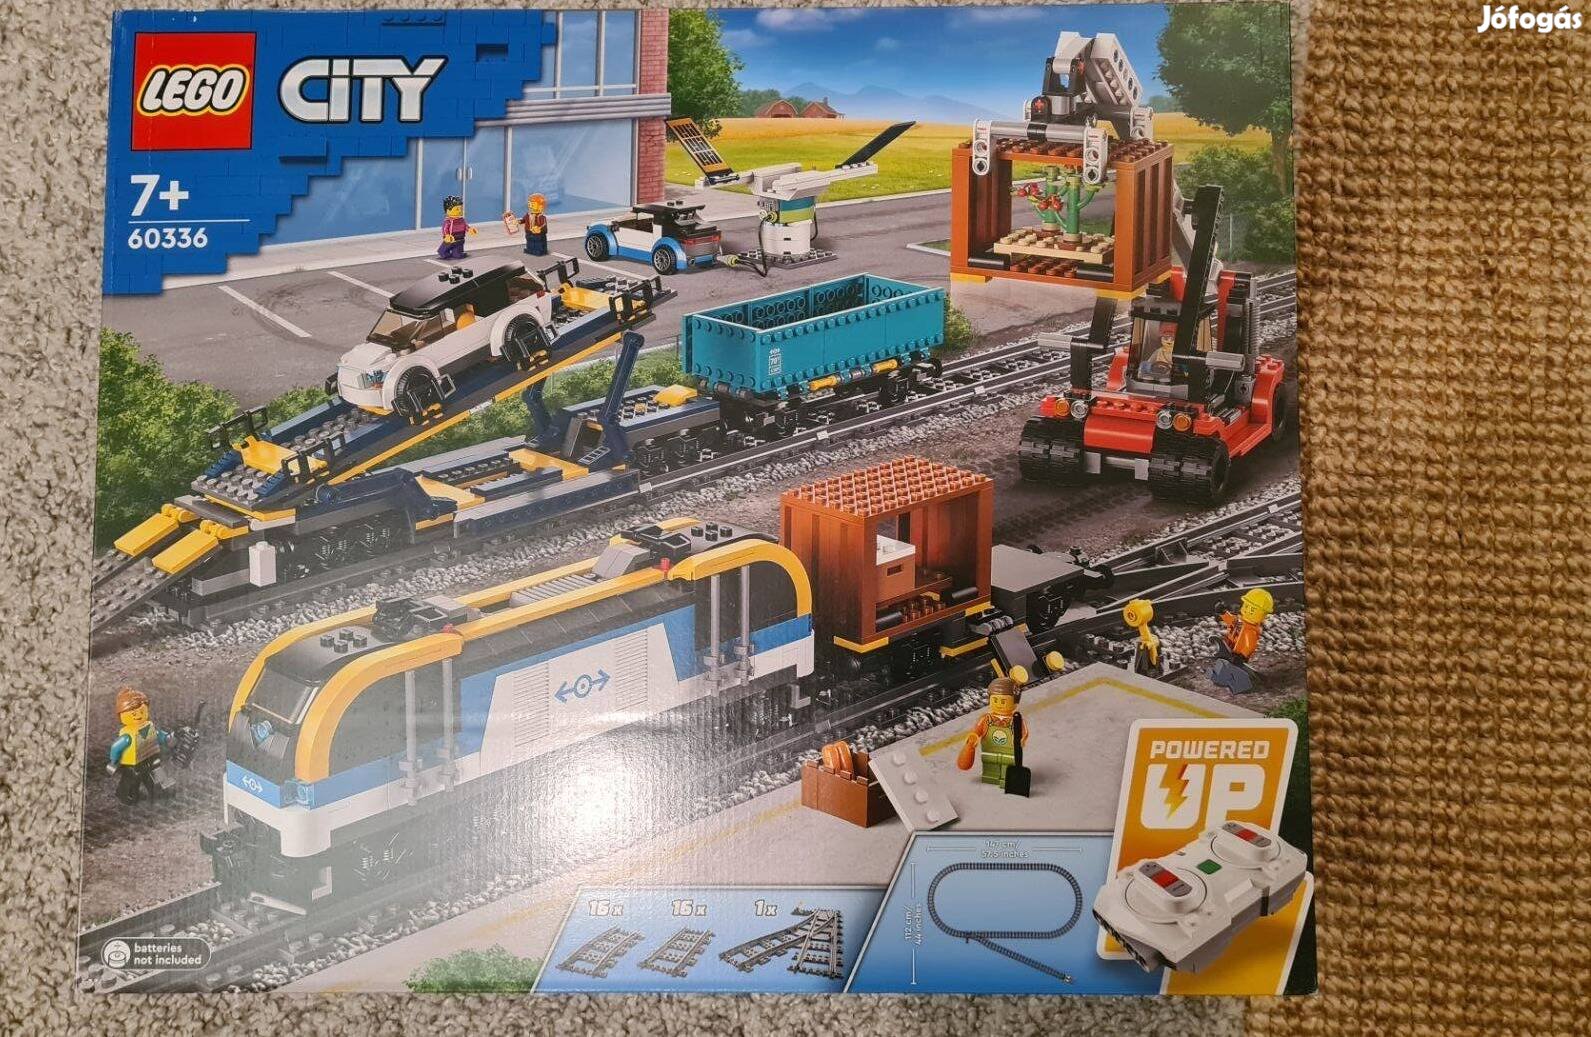 Bontatlan Lego 60336 Lego City